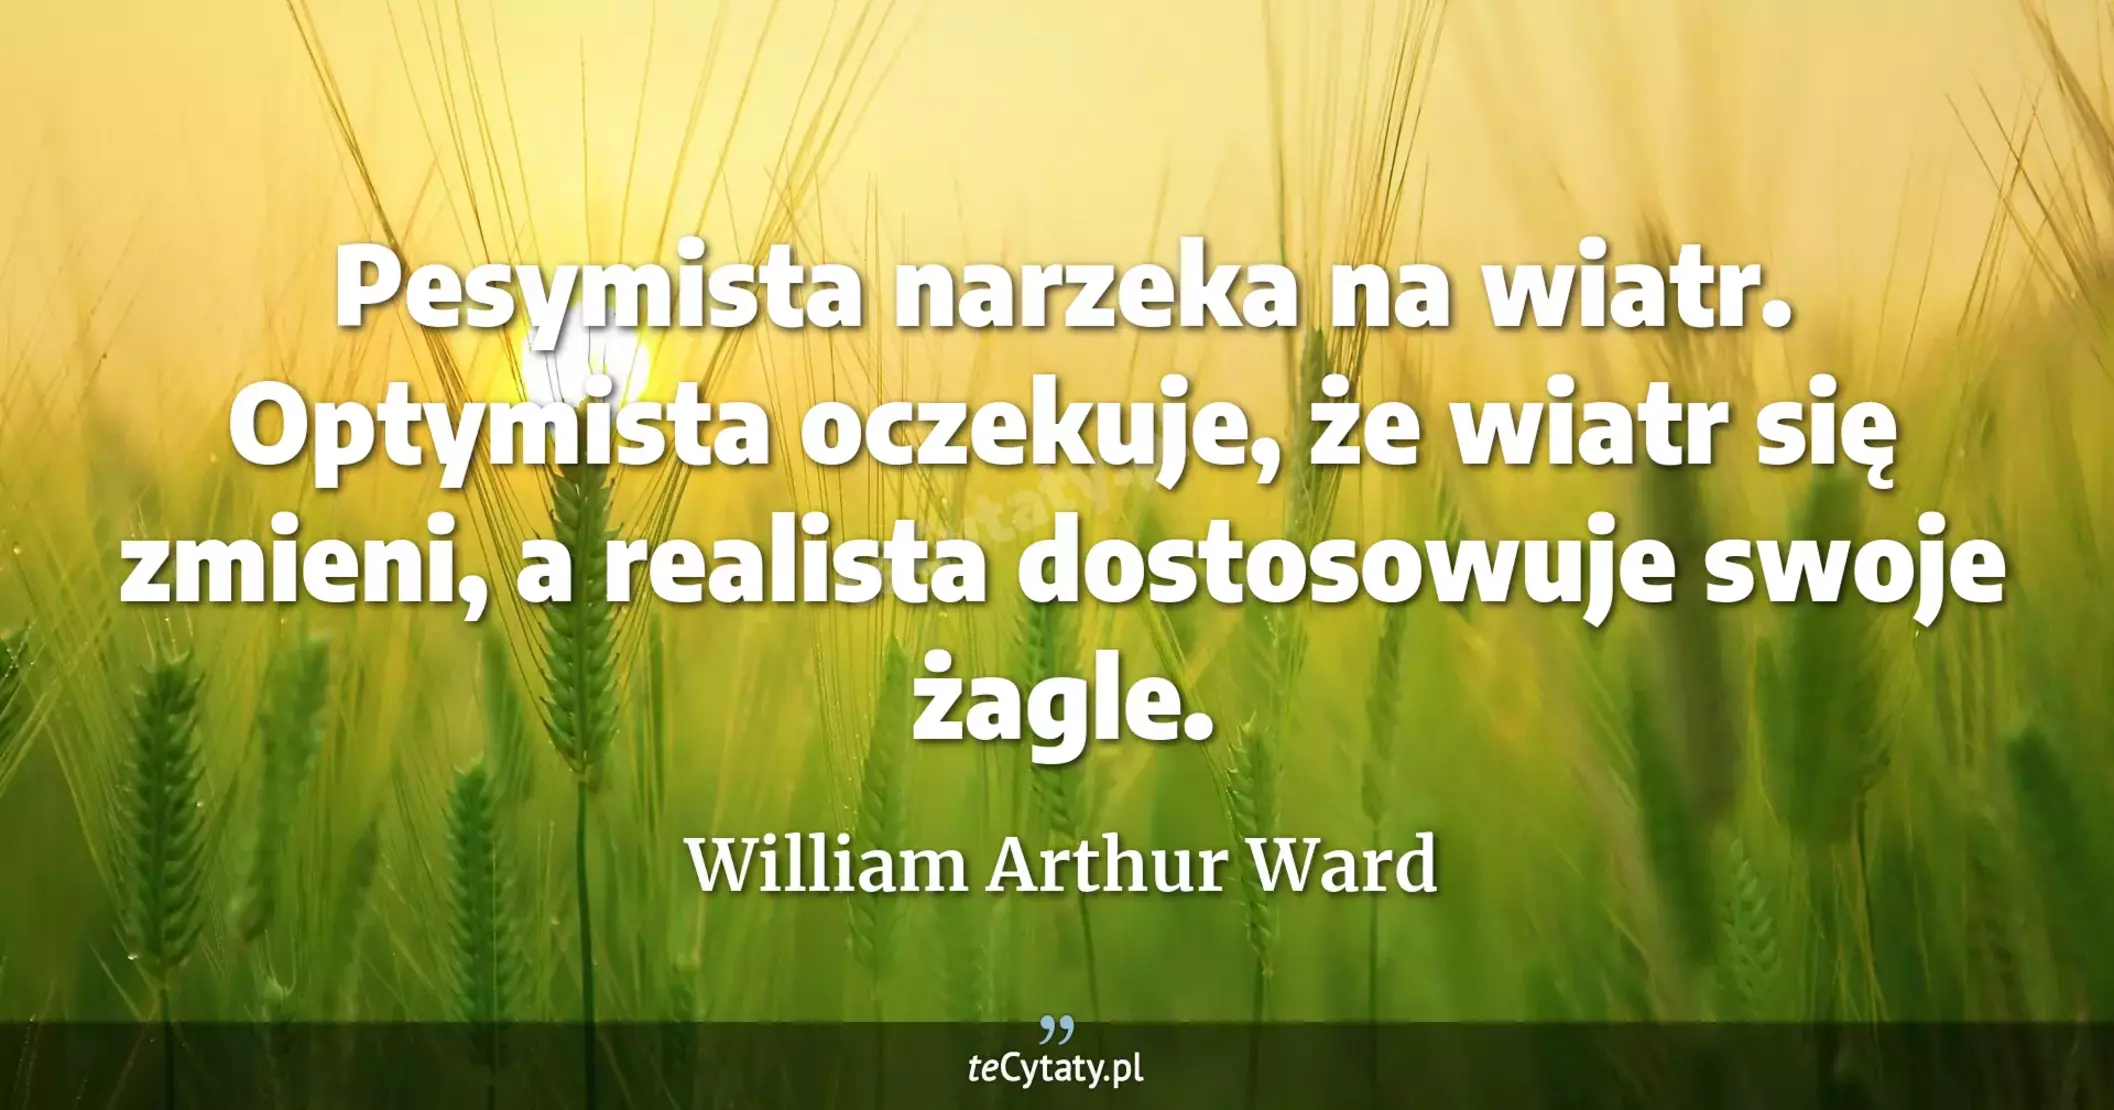 Pesymista narzeka na wiatr. Optymista oczekuje, że wiatr się zmieni, a realista dostosowuje swoje żagle. - William Arthur Ward